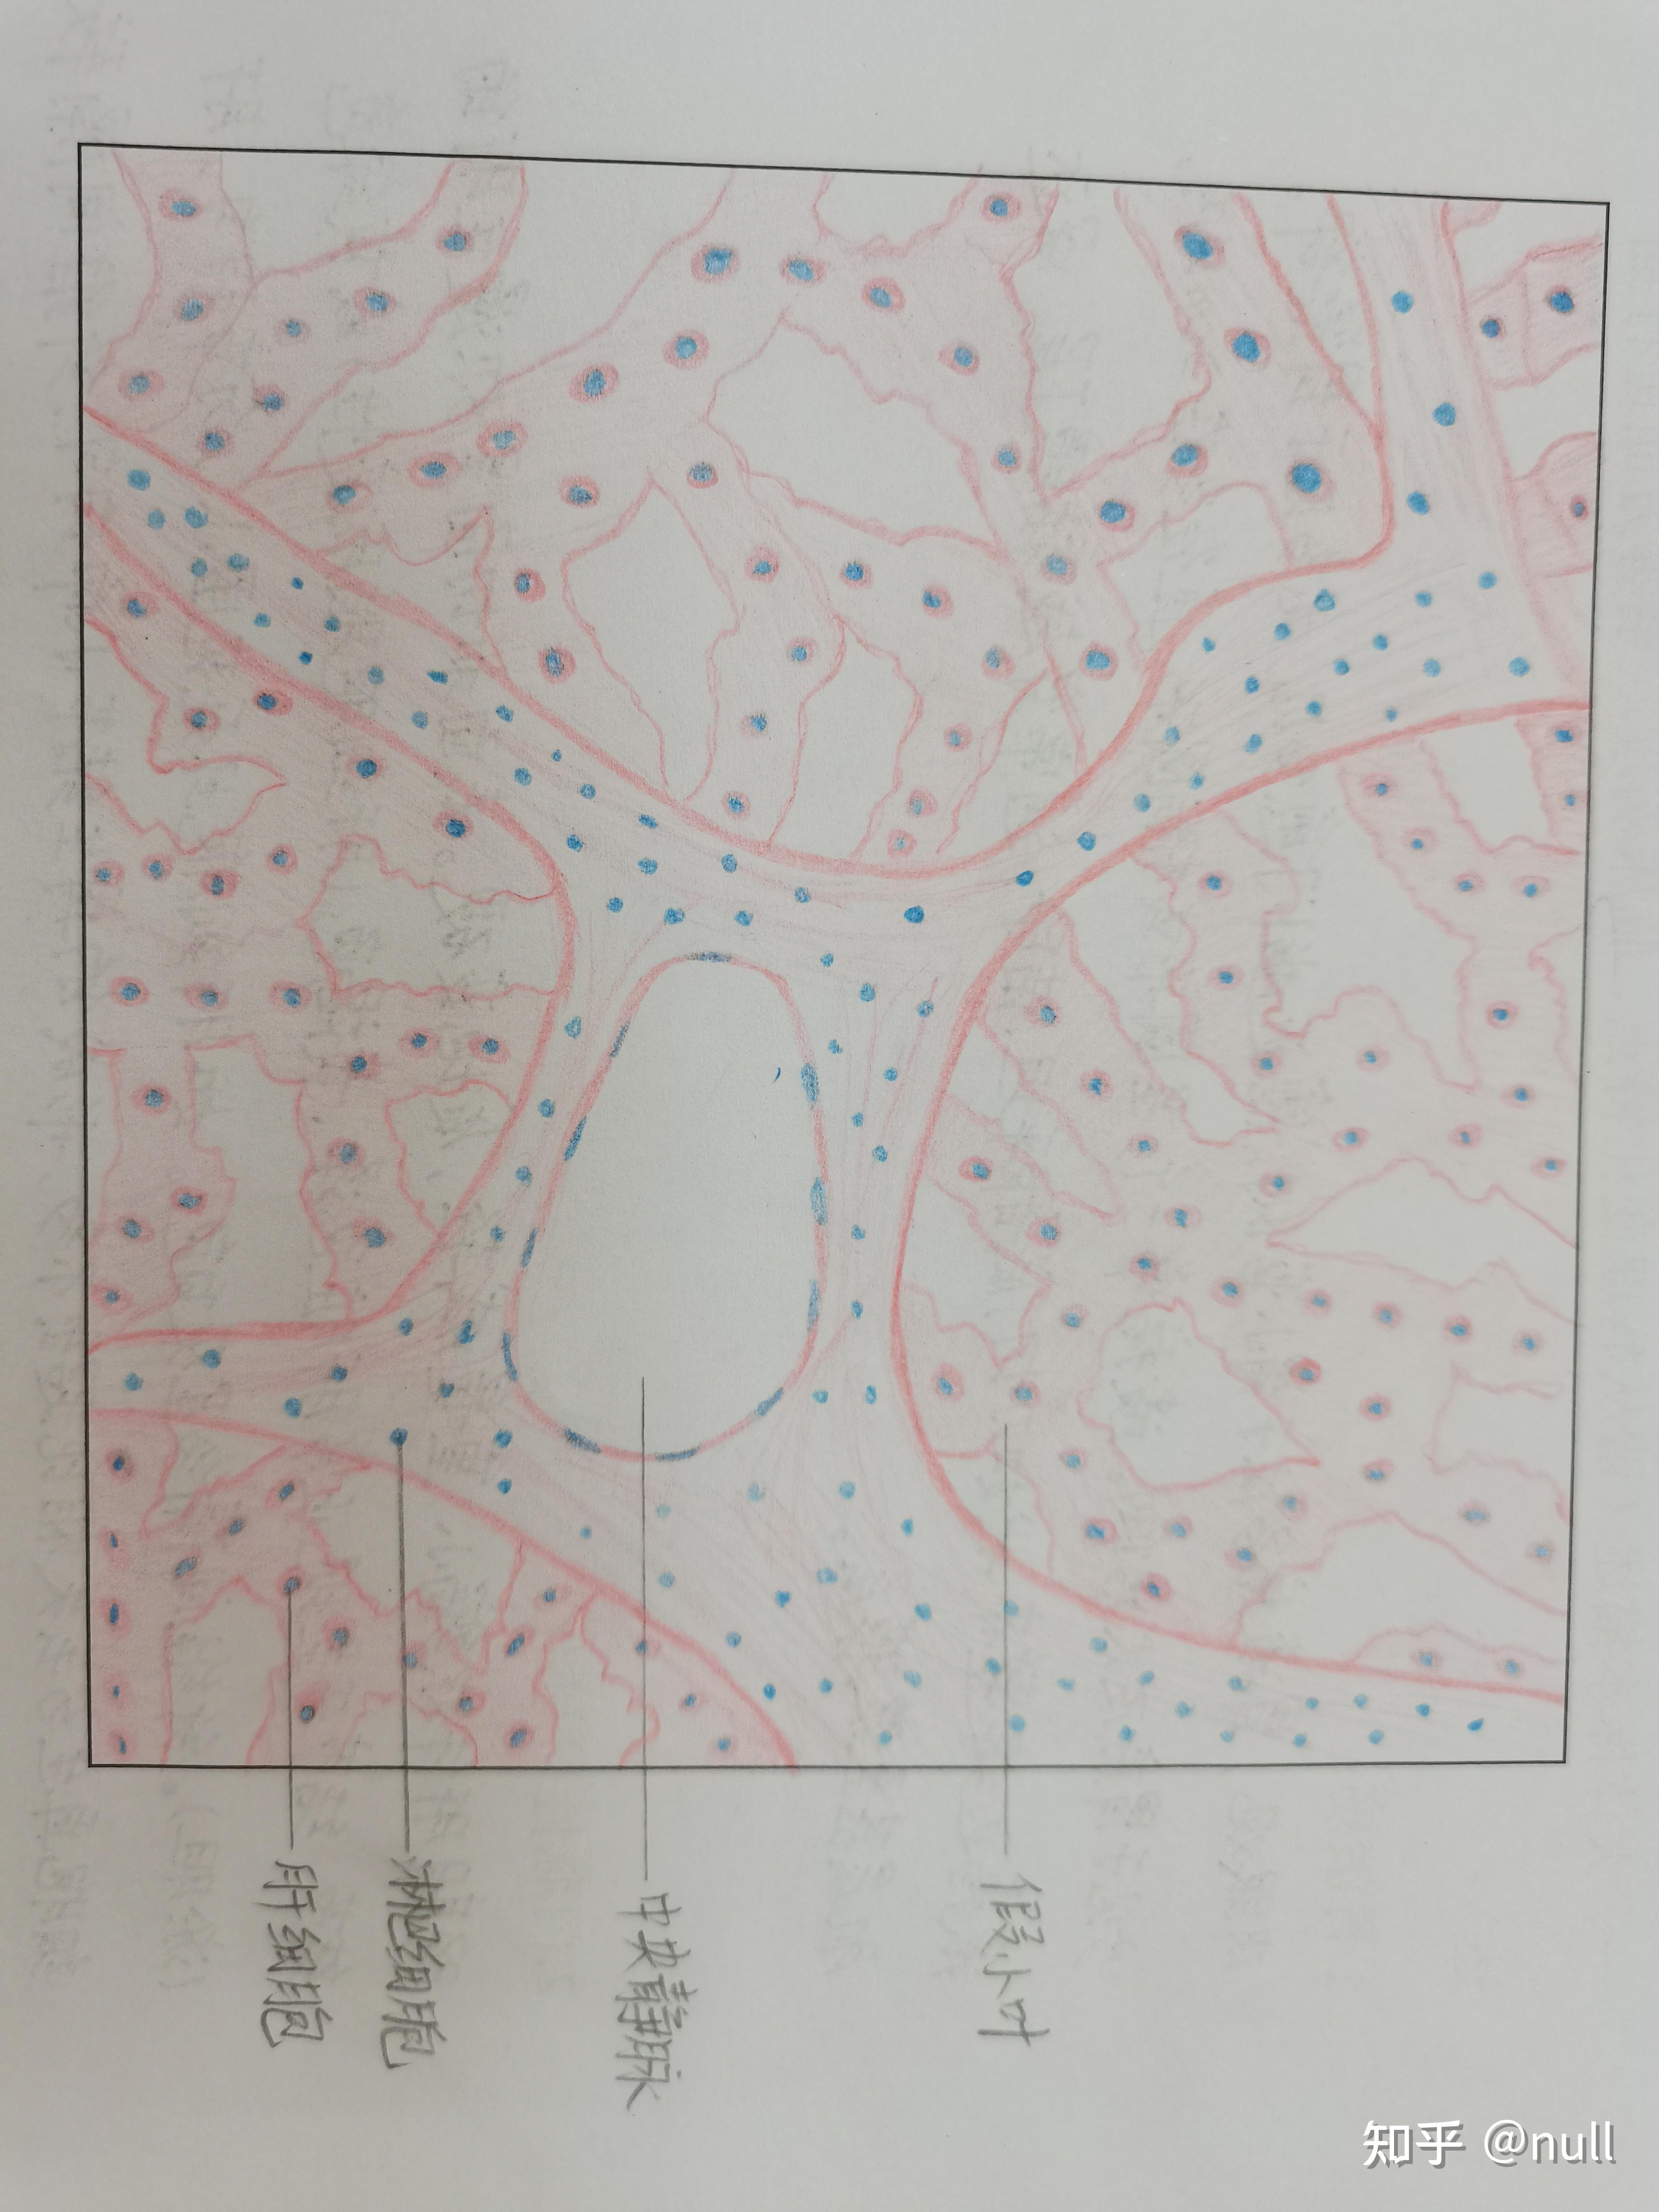 肝硬化肺结核组胚红蓝铅笔绘图108 赞同 · 0 评论文章附一个红蓝铅笔